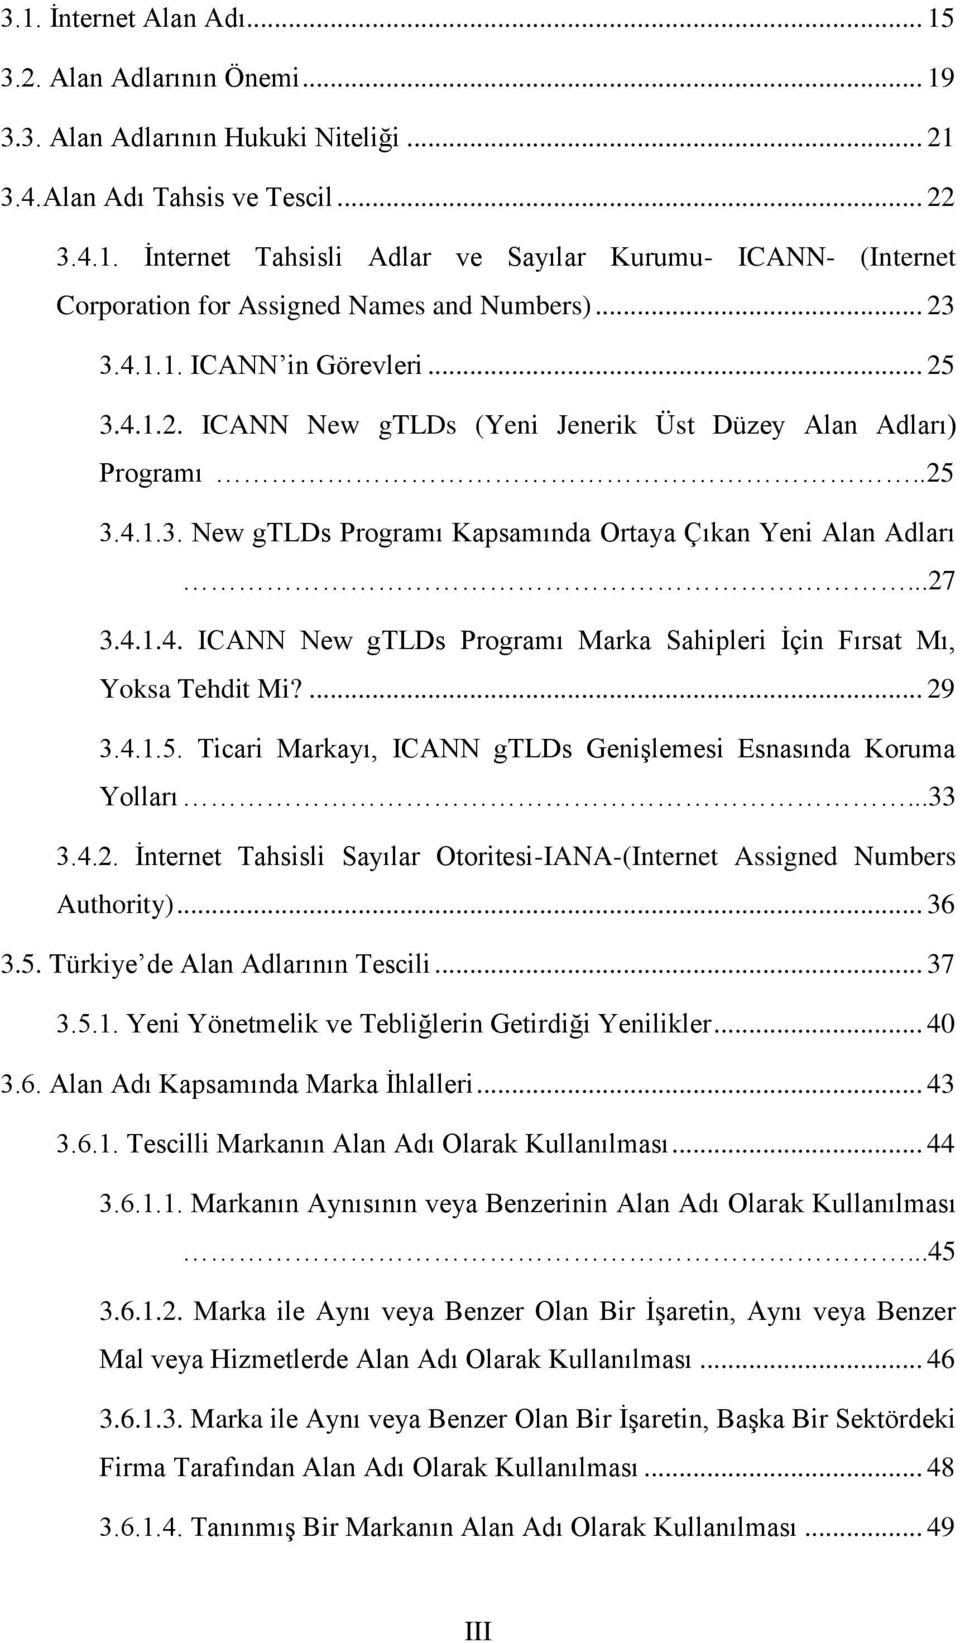 ... 29 3.4.1.5. Ticari Markayı, ICANN gtlds Genişlemesi Esnasında Koruma Yolları...33 3.4.2. İnternet Tahsisli Sayılar Otoritesi-IANA-(Internet Assigned Numbers Authority)... 36 3.5. Türkiye de Alan Adlarının Tescili.